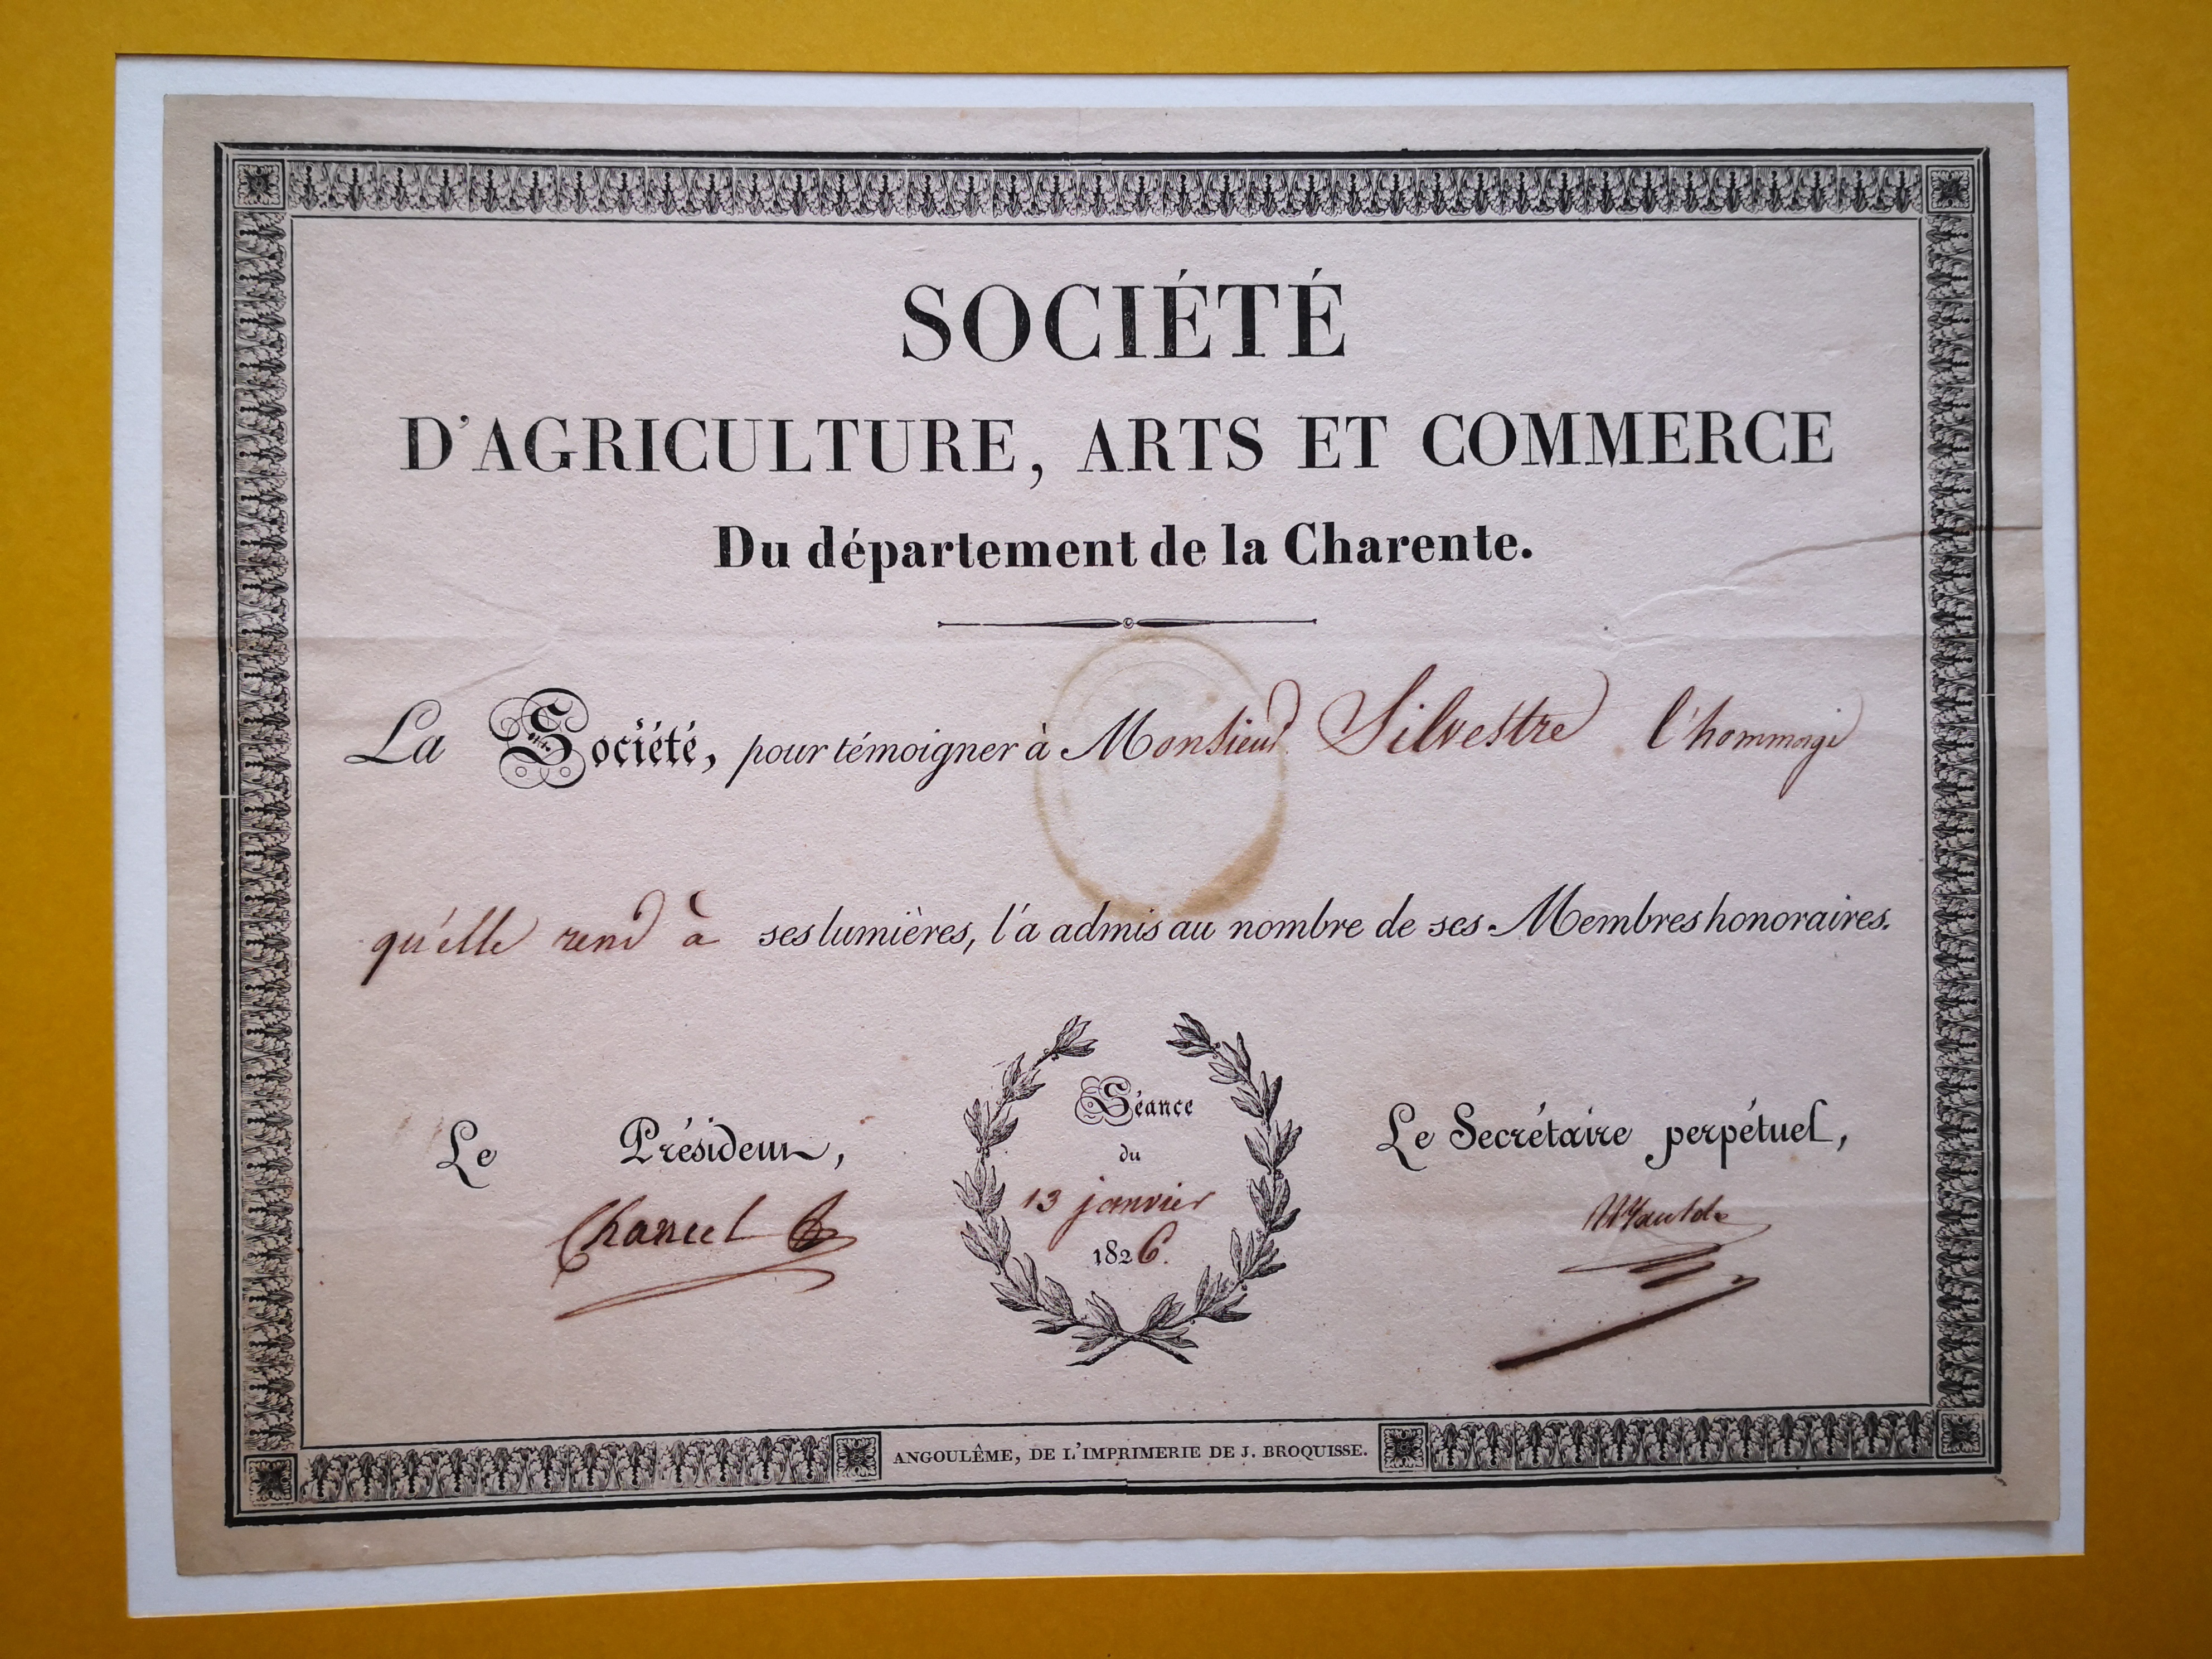  Diplôme de membre honoraire de la Société d'Agriculture, Arts et Commerce du département de la Charente - Documents